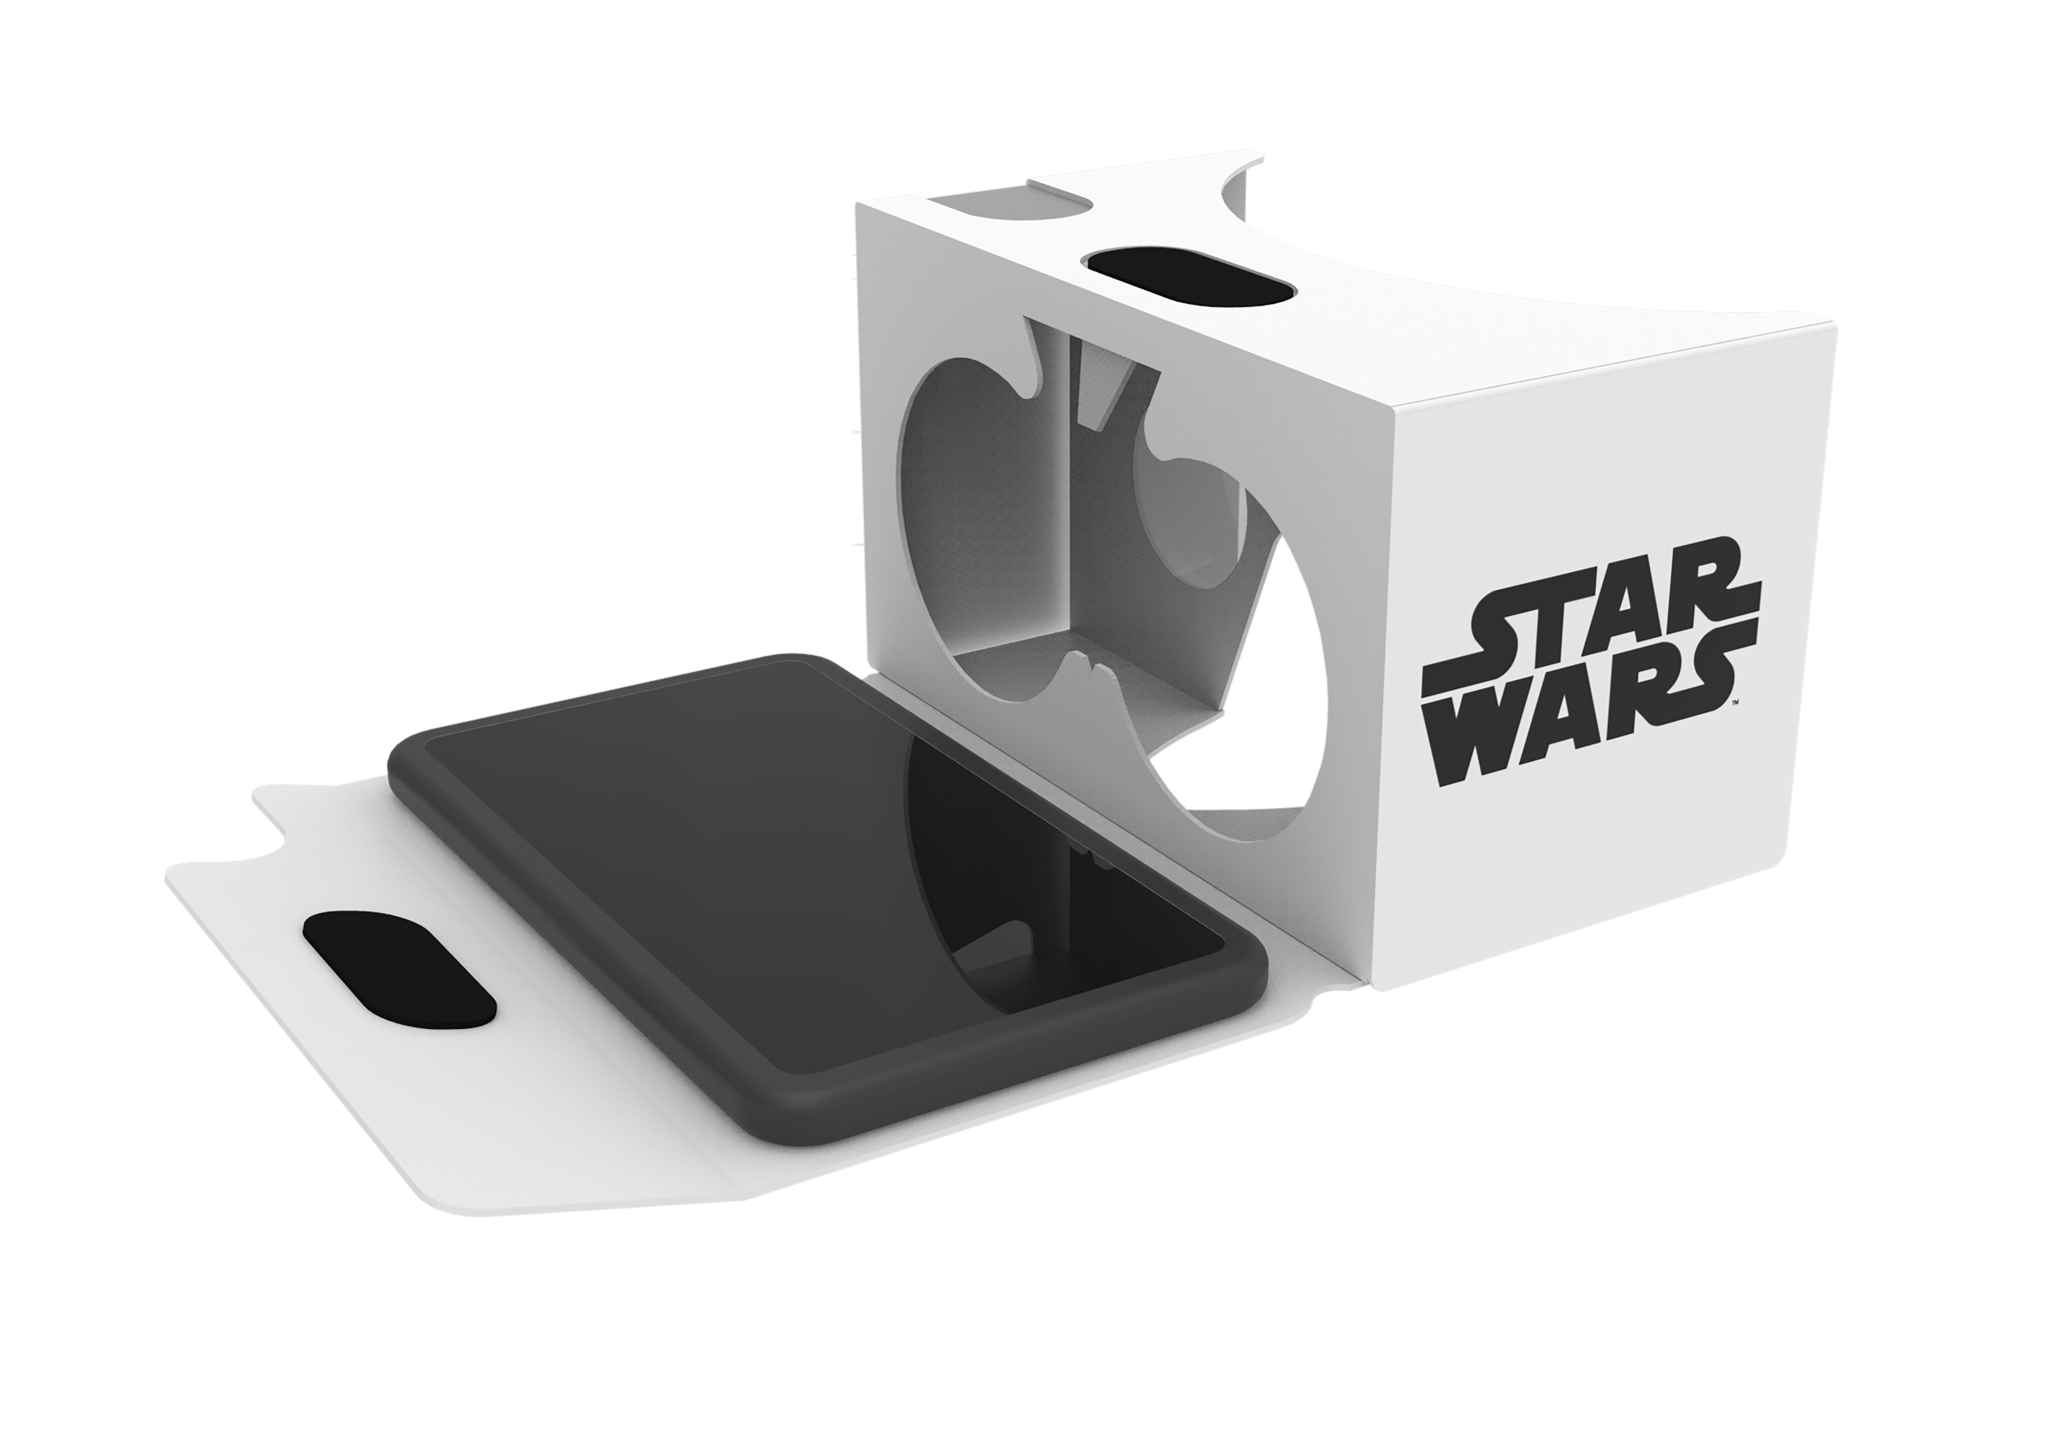 Star Wars VR Viewfinders